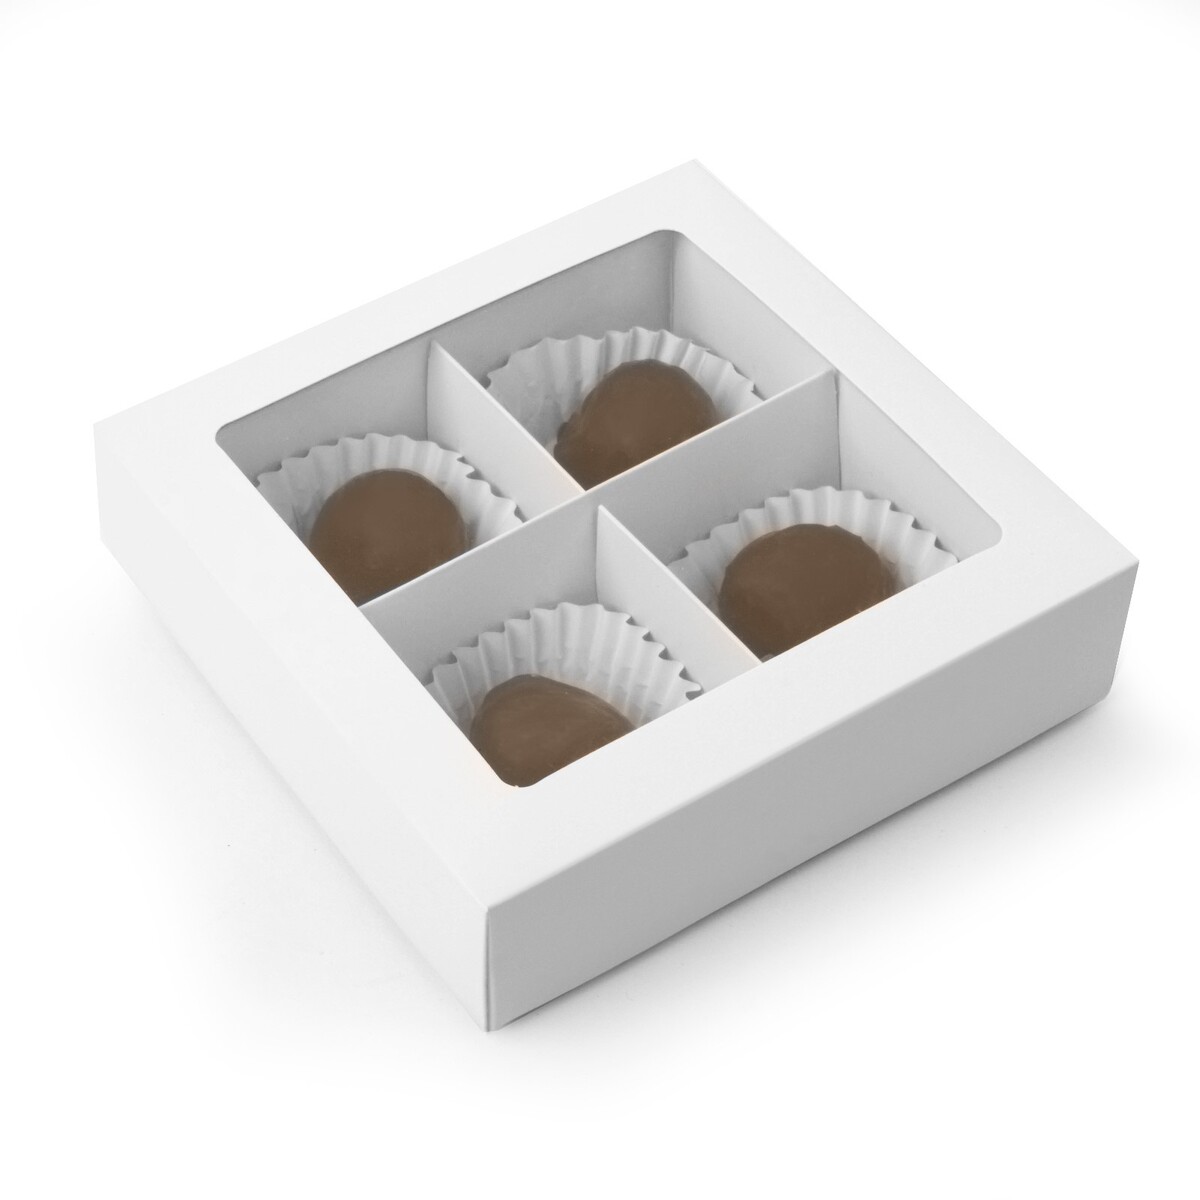 Коробка складная под 4 конфеты, белая, 12.6 х 12.6 х 3.5 см коробка под 4 конфеты